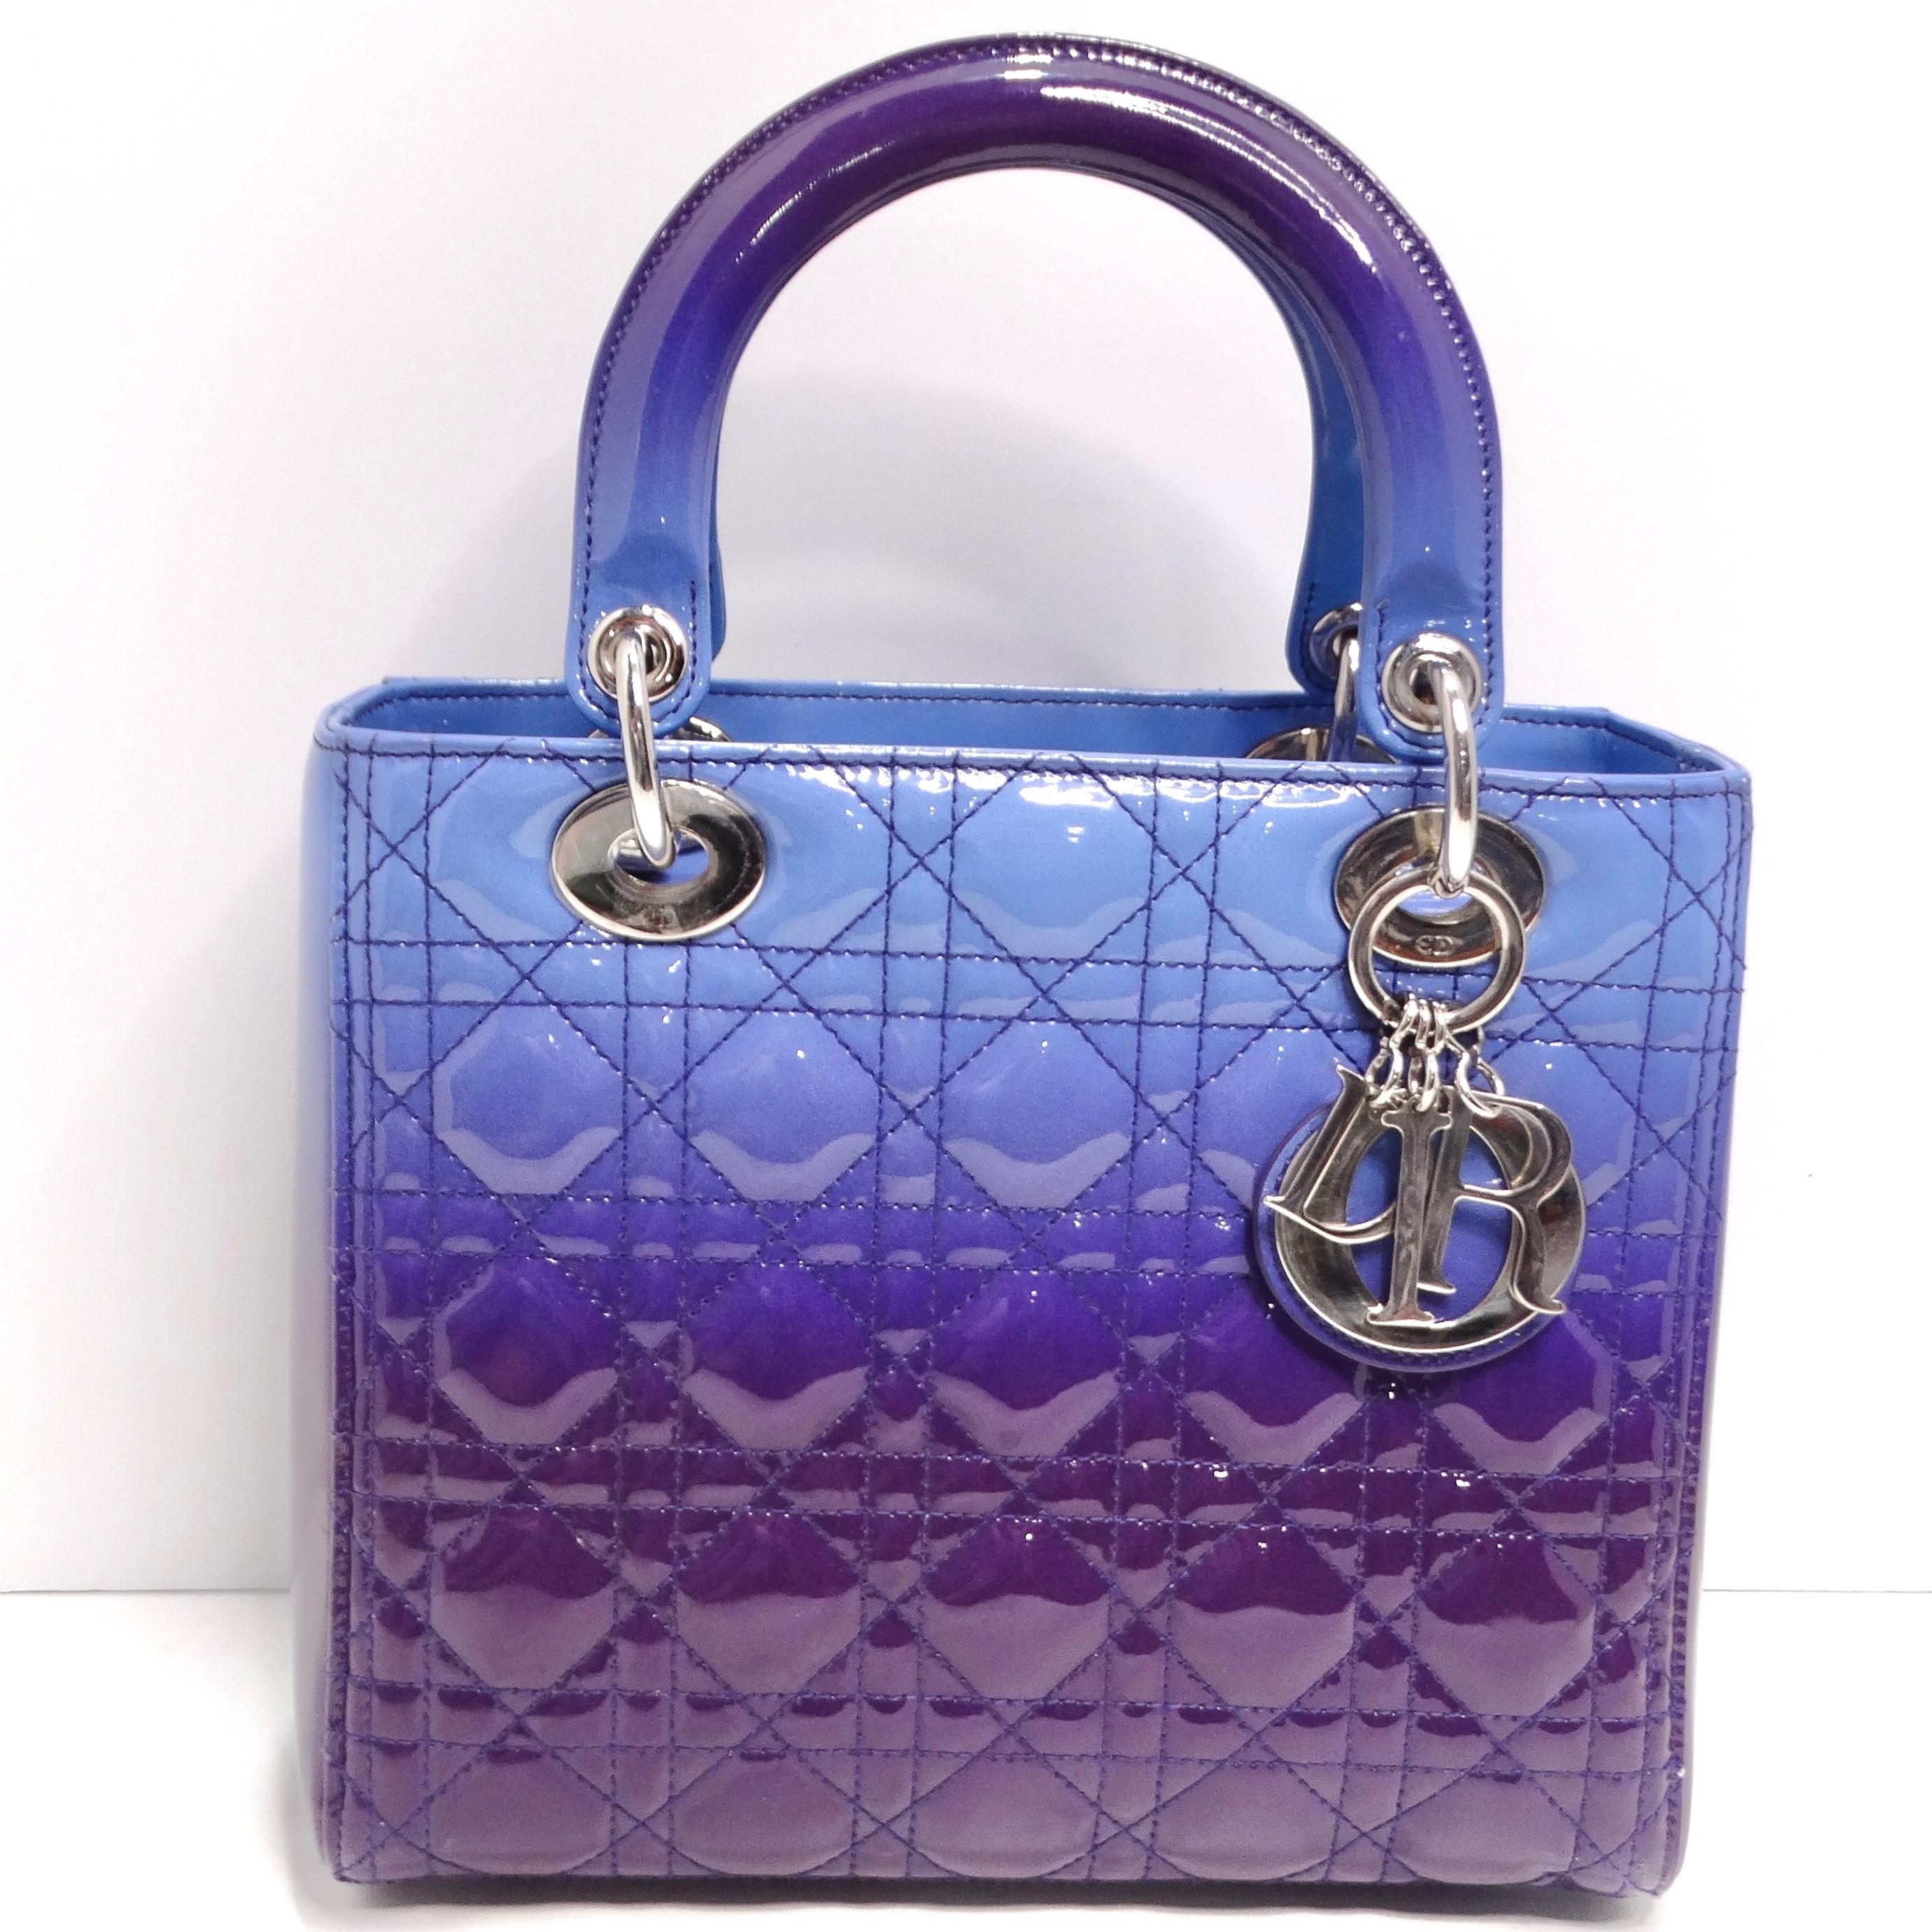 Voici une œuvre d'art sous la forme d'un sac à main - le sac Lady Dior Medium Cannage Gradient en vernis de Christian Dior. Réalisé avec une attention exquise aux détails, ce sac est un véritable chef-d'œuvre de la mode de luxe, conçu pour faire une